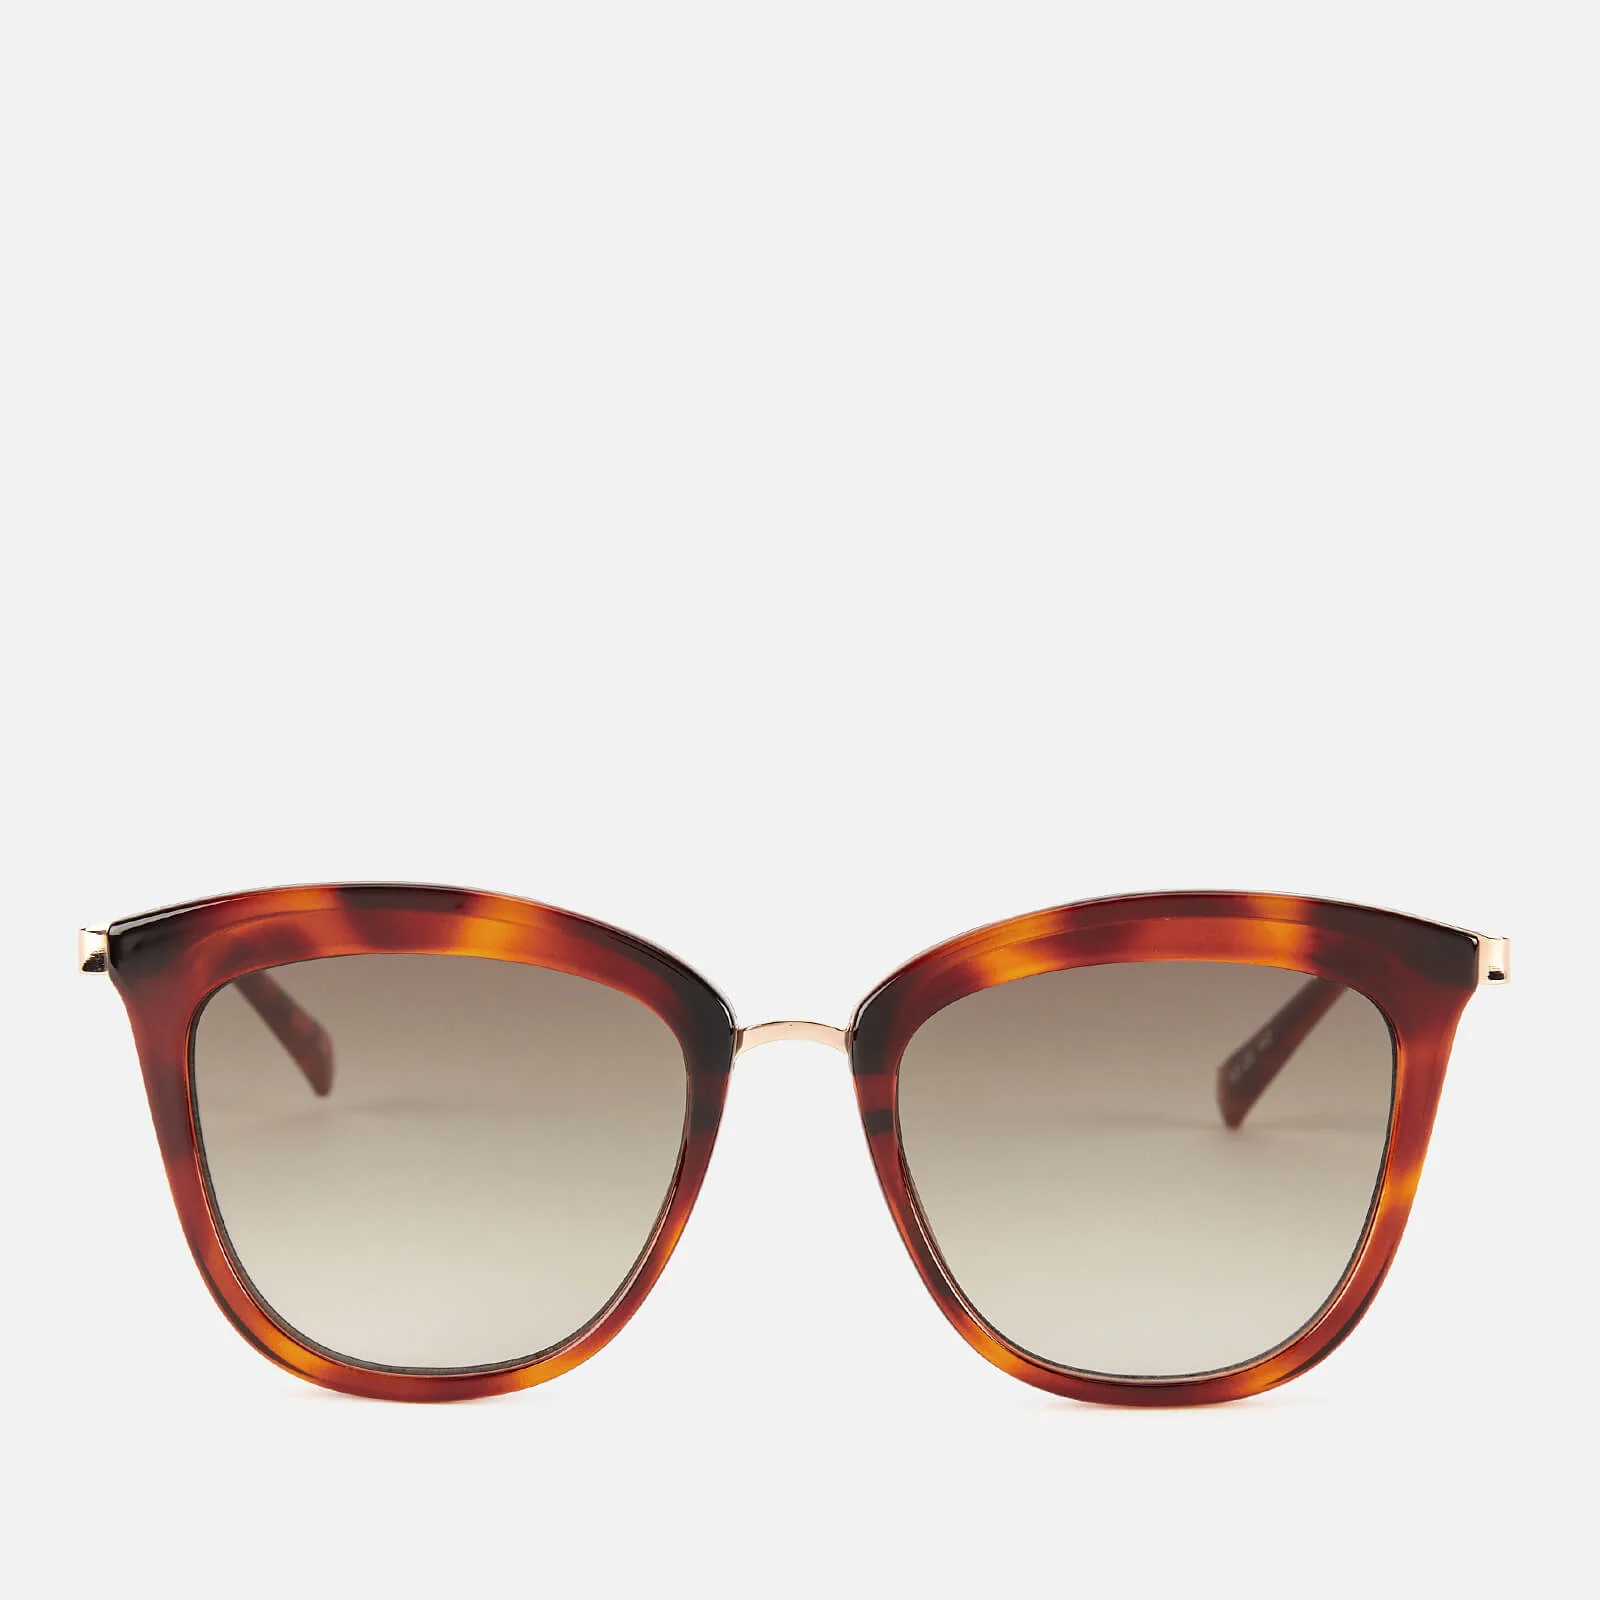 Le Specs Women's Caliente Sunglasses - Toffee Tort/Khaki Image 1